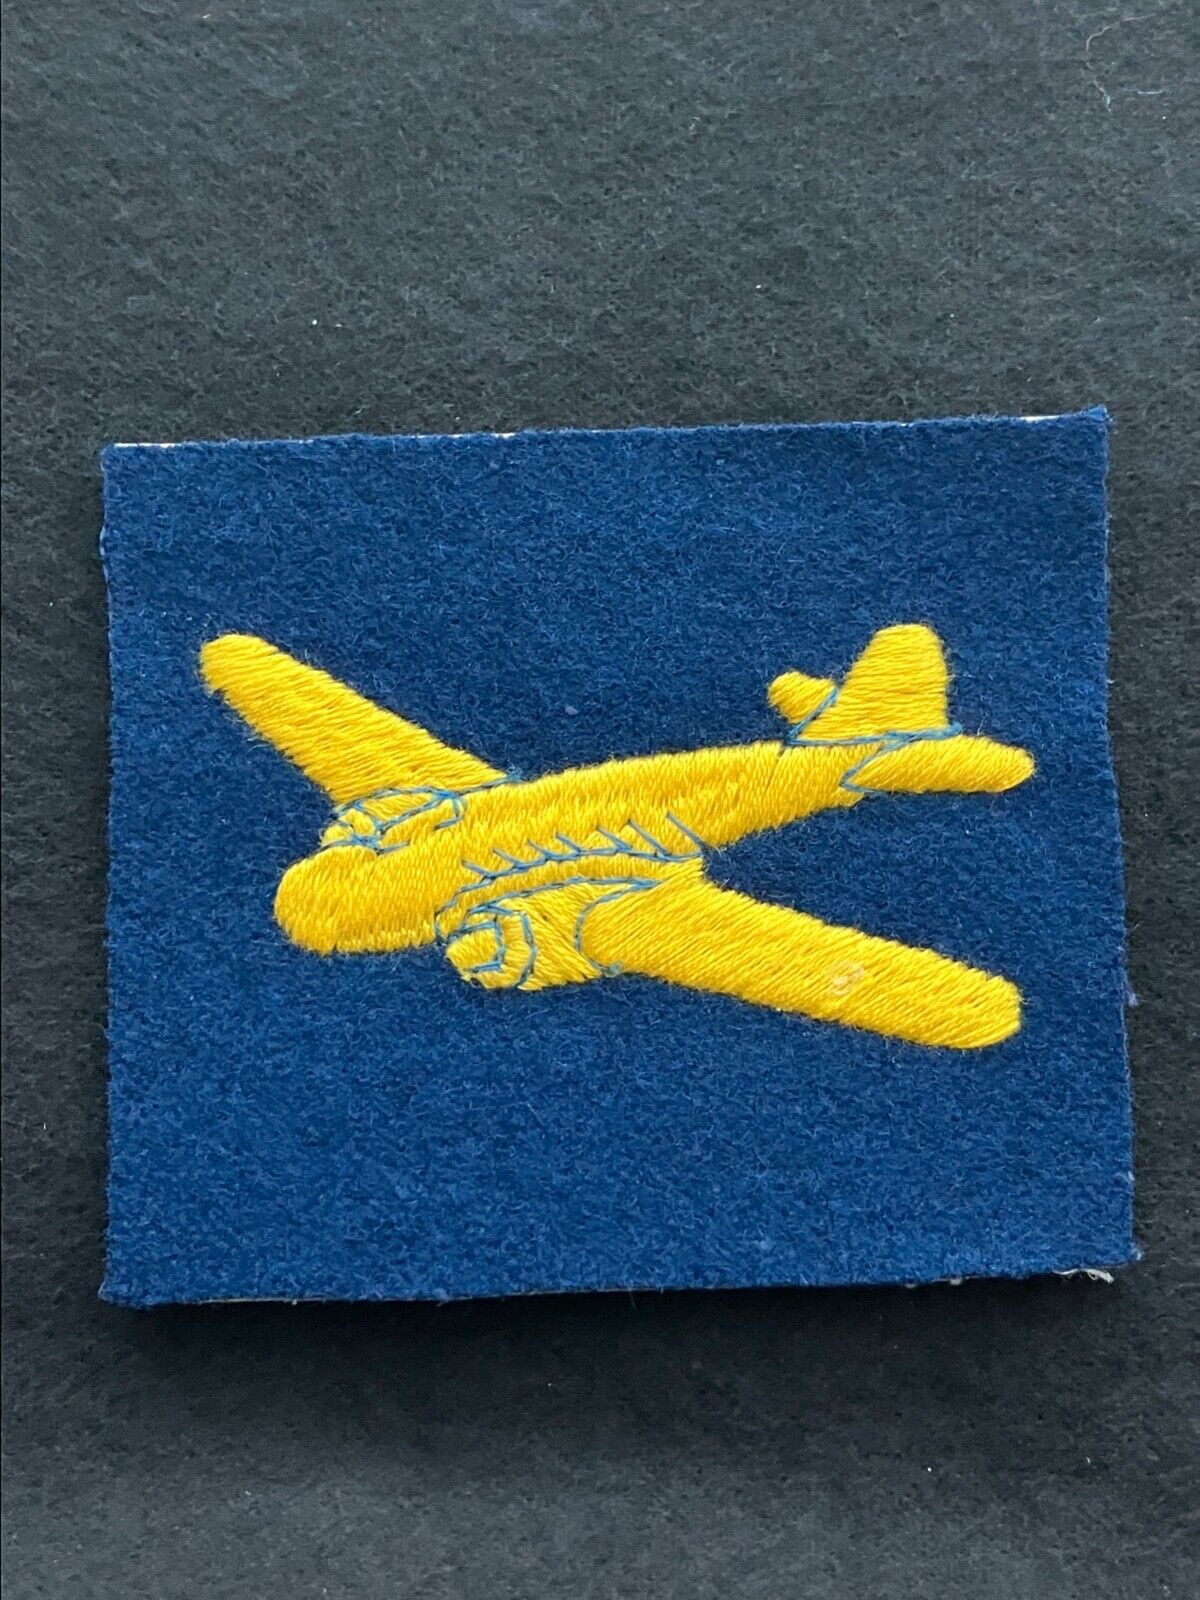 1940s Air Despatch. UK 395 (Parachute) Air Despatch Troop. Golden Dakota Arnhem